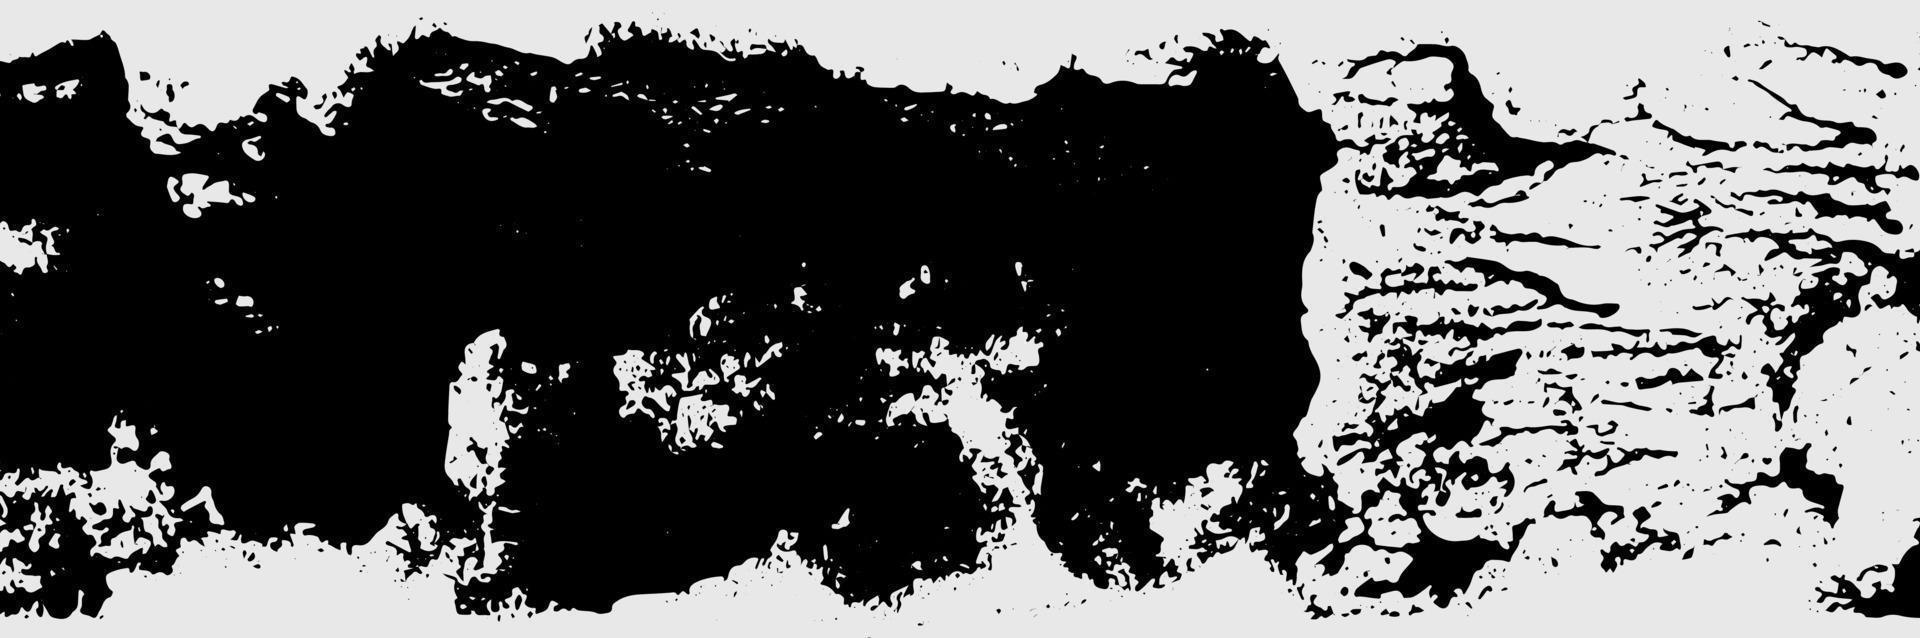 schwarz und Weiß Hintergrund Grunge Bürste Schläge. texturiert Hintergrund geeignet zum Banner, Geschichten, Sozial Medien Beiträge, Muster, usw. vektor